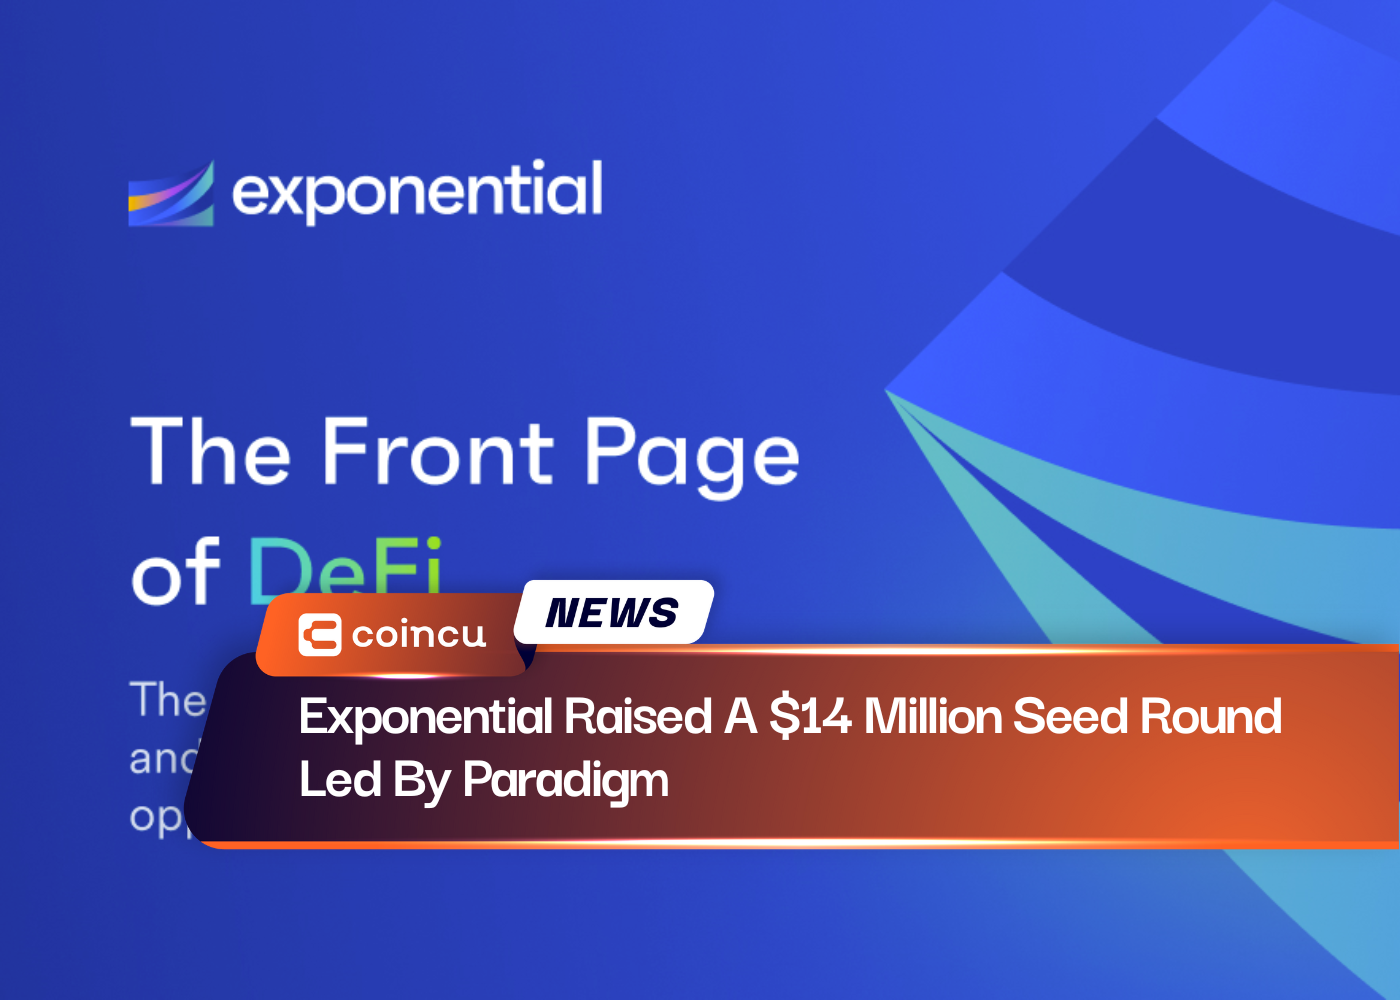 Exponential привлекла начальный раунд на 14 миллионов долларов под руководством Paradigm